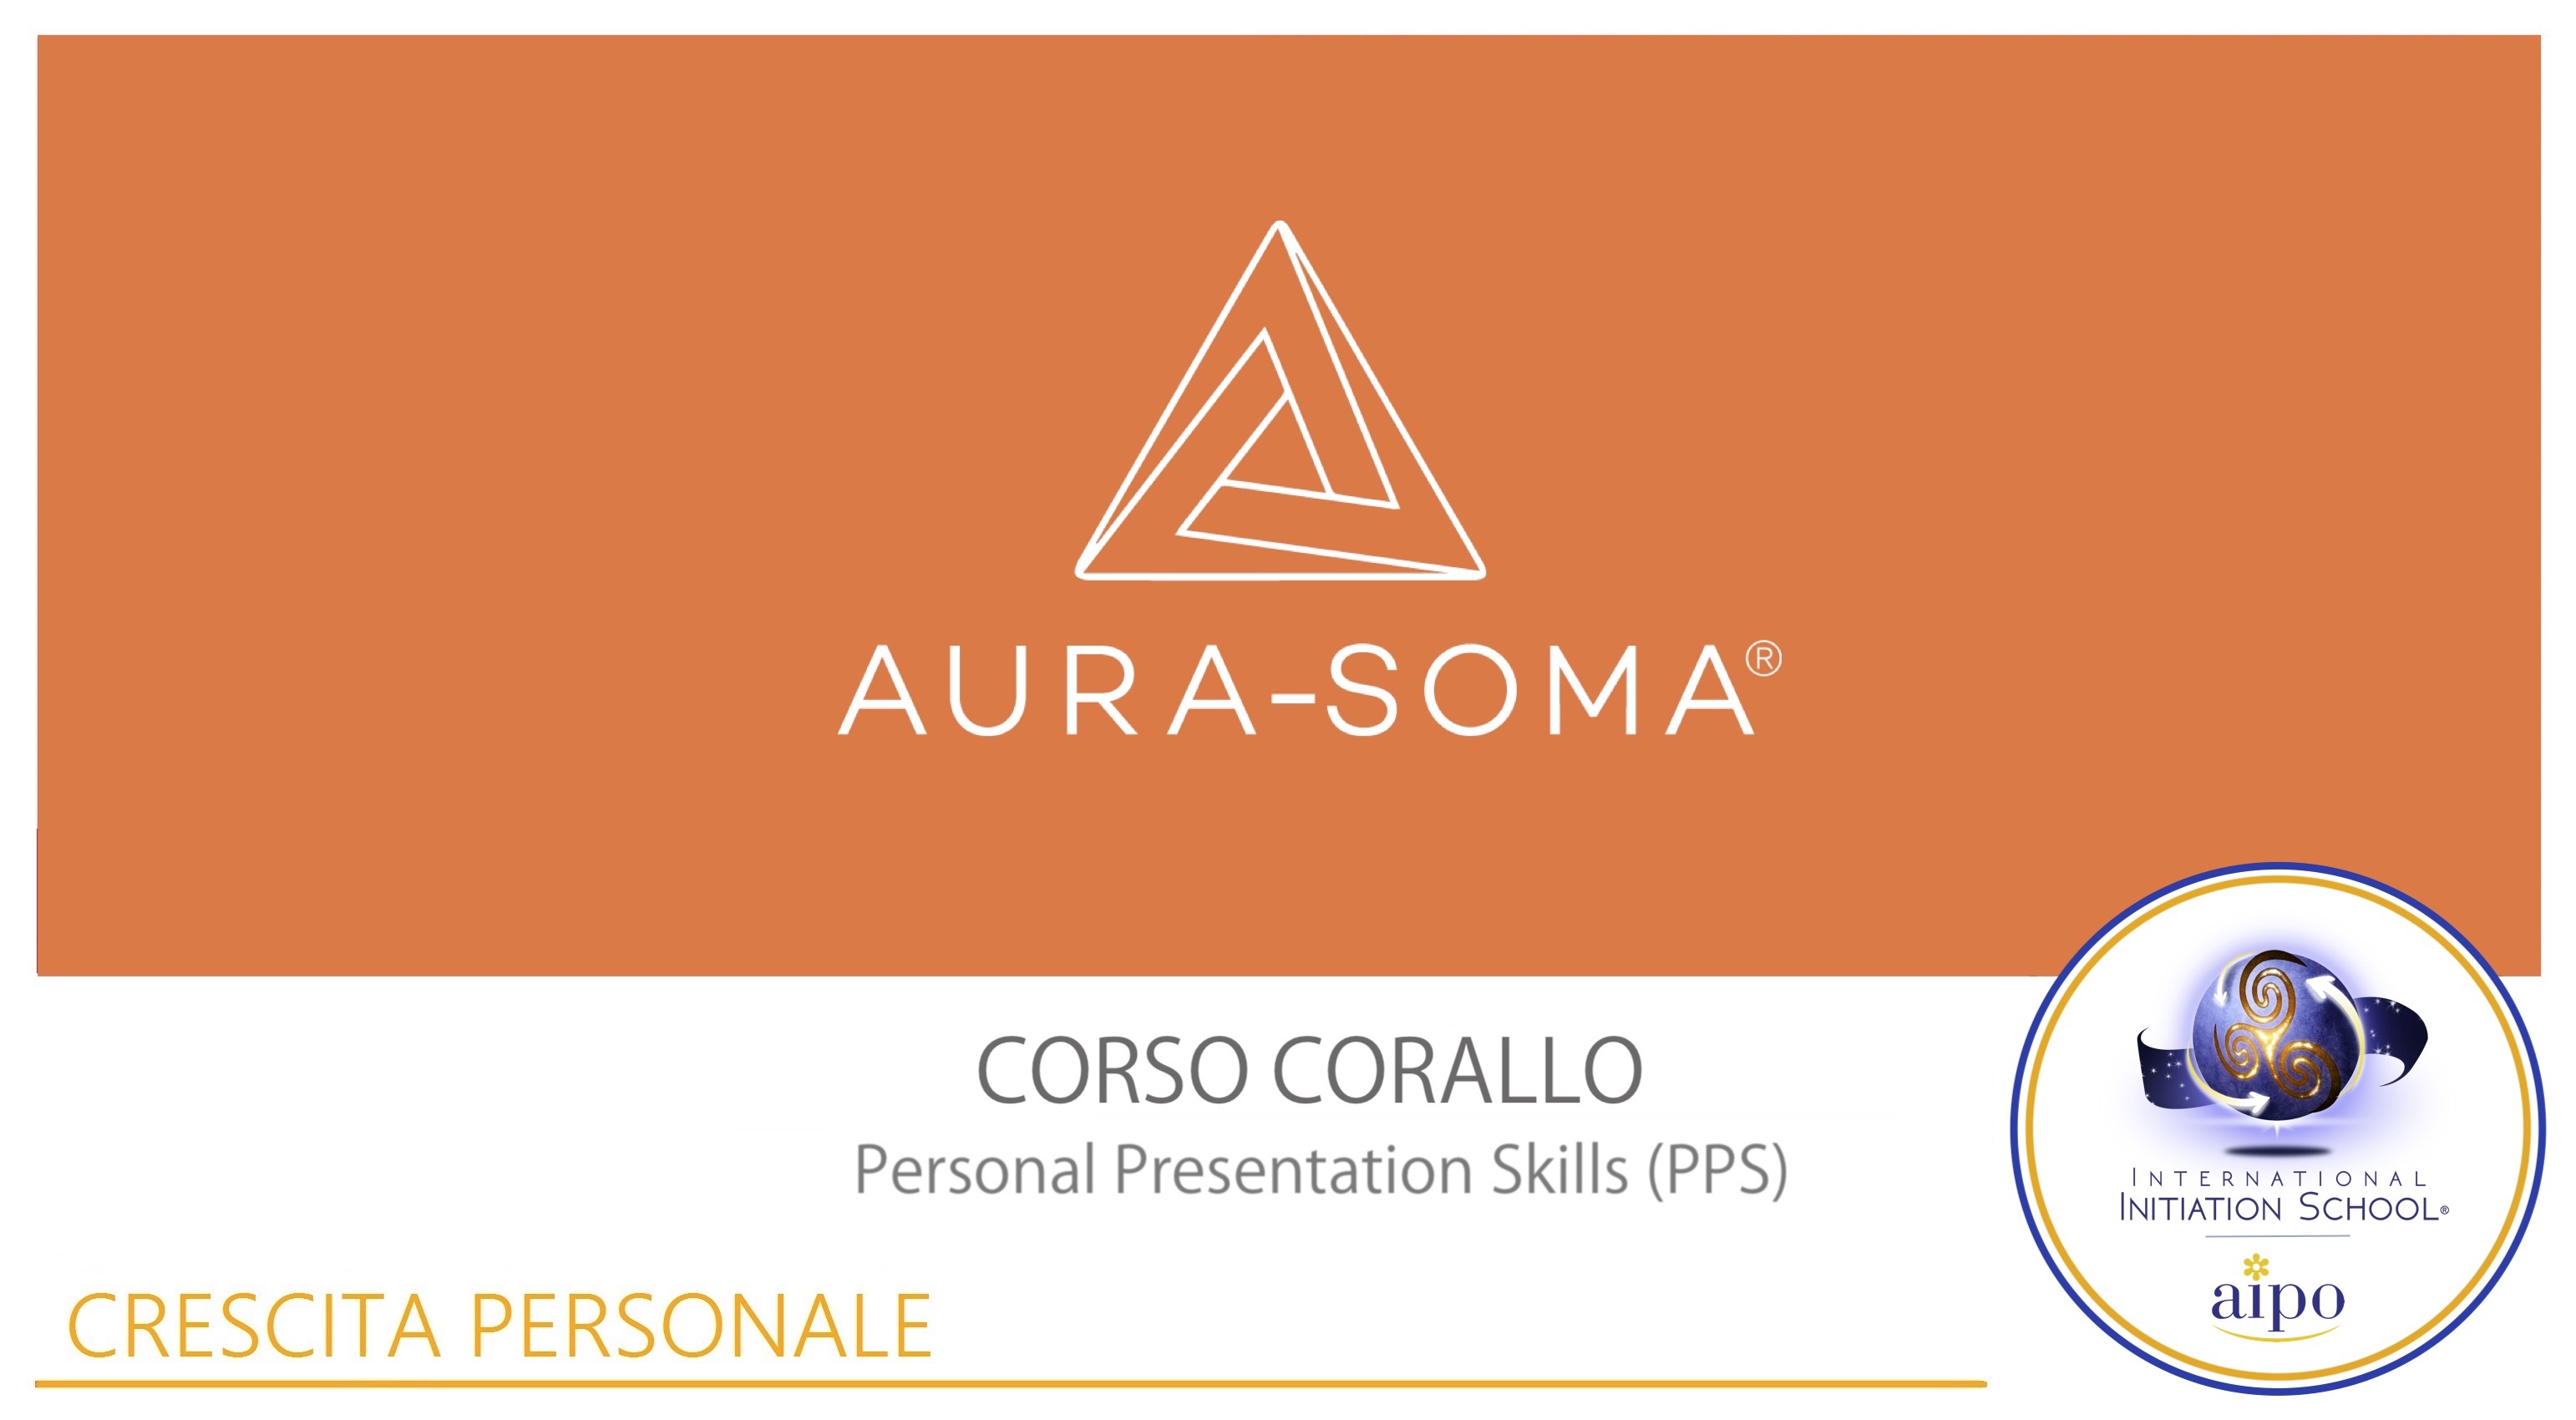 Aura-Soma® Personal Presentation Skills (PPS): "Corso Corallo"